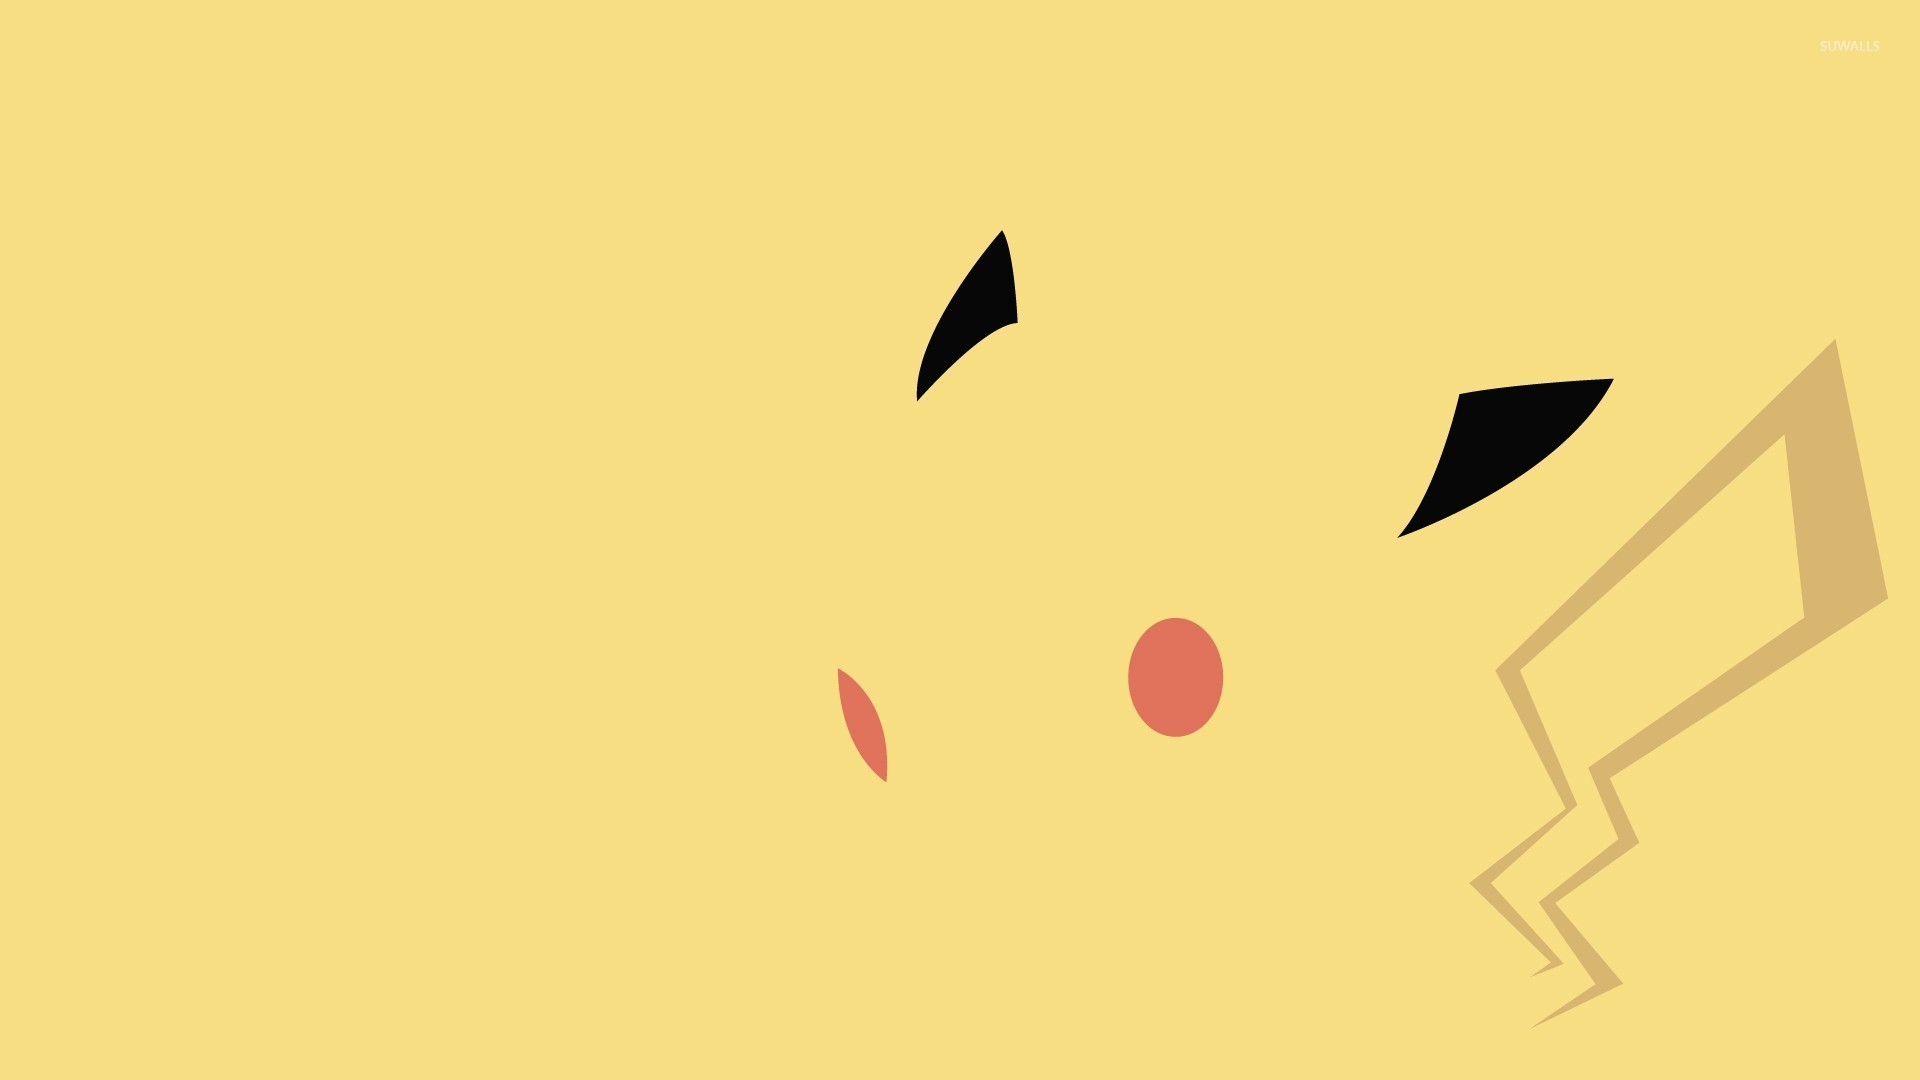 Pikachu – Pokemon 3 wallpaper